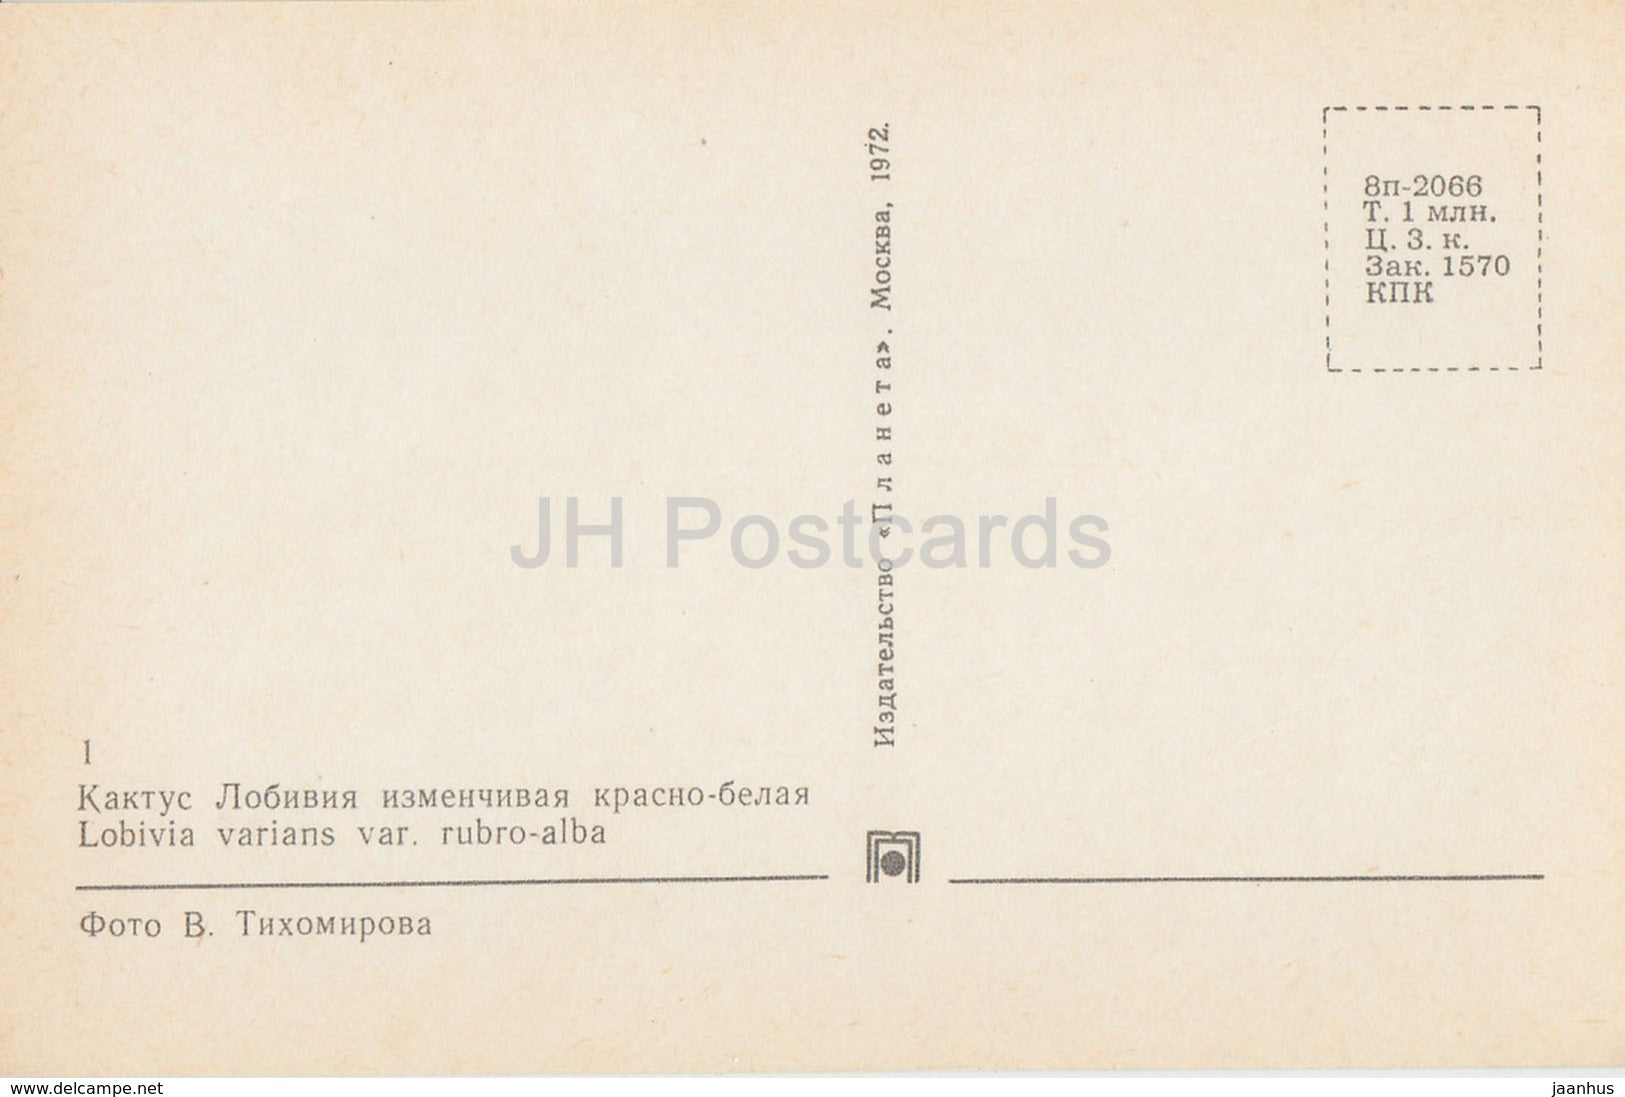 Lobivia varians - Cactus - Flowers - 1972 - Russia USSR - unused - JH Postcards